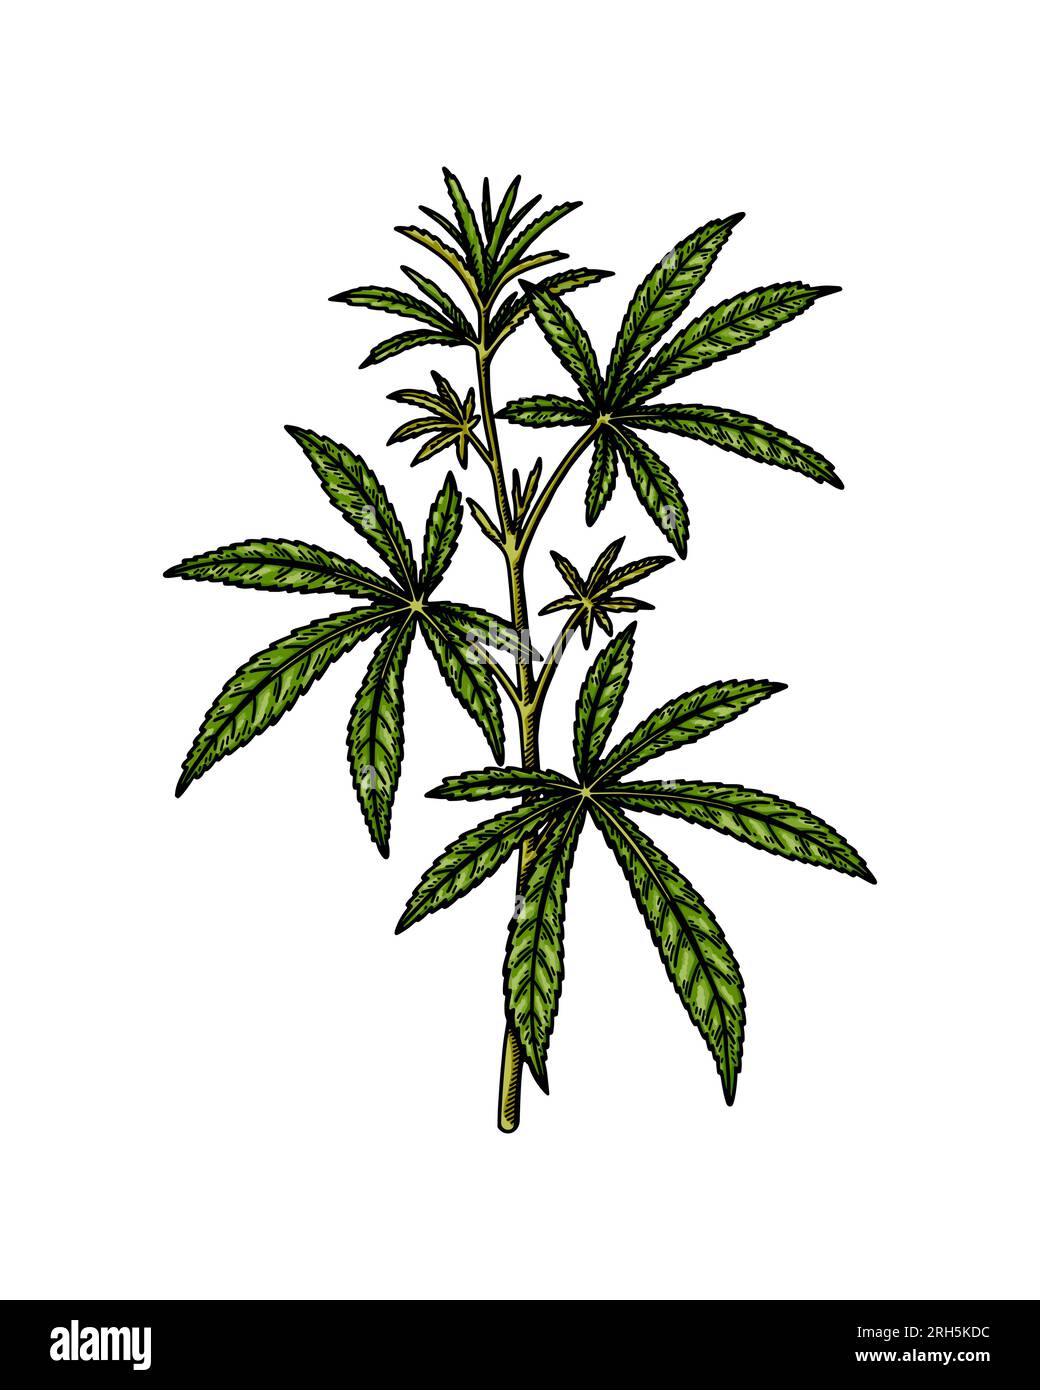 Schizzo del ramo di cannabis. Disegno botanico sulla marijuana. Illustrazione vettoriale realistica disegnata a mano Illustrazione Vettoriale